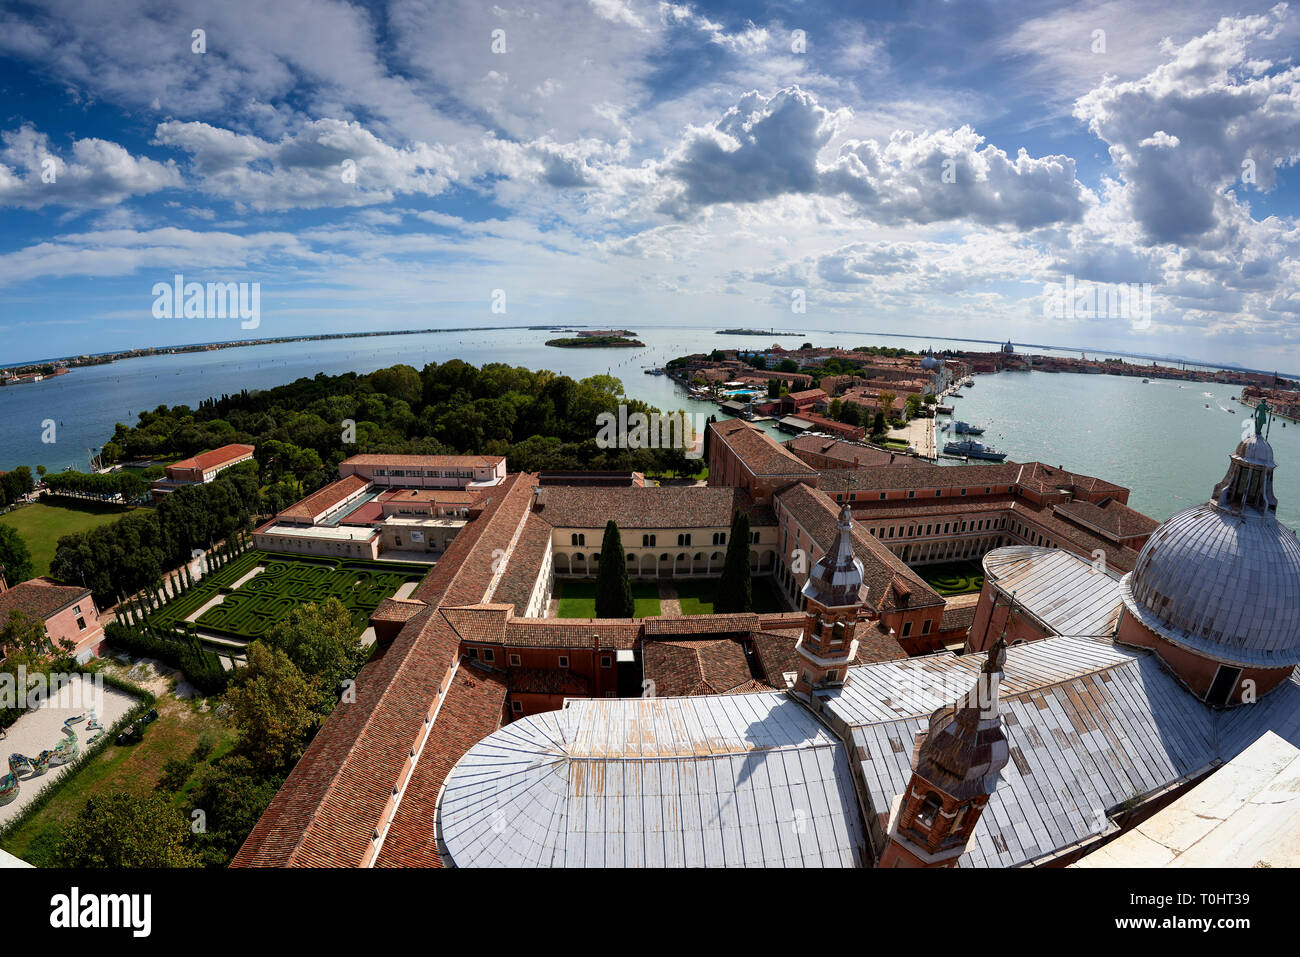 Erhöhter Blick auf die Insel San Giorgio Maggiore, Venedig mit Blick auf die Kirche San Giorgio Maggiore und das Hotel 007 aus dem Film Casino Royale Stockfoto